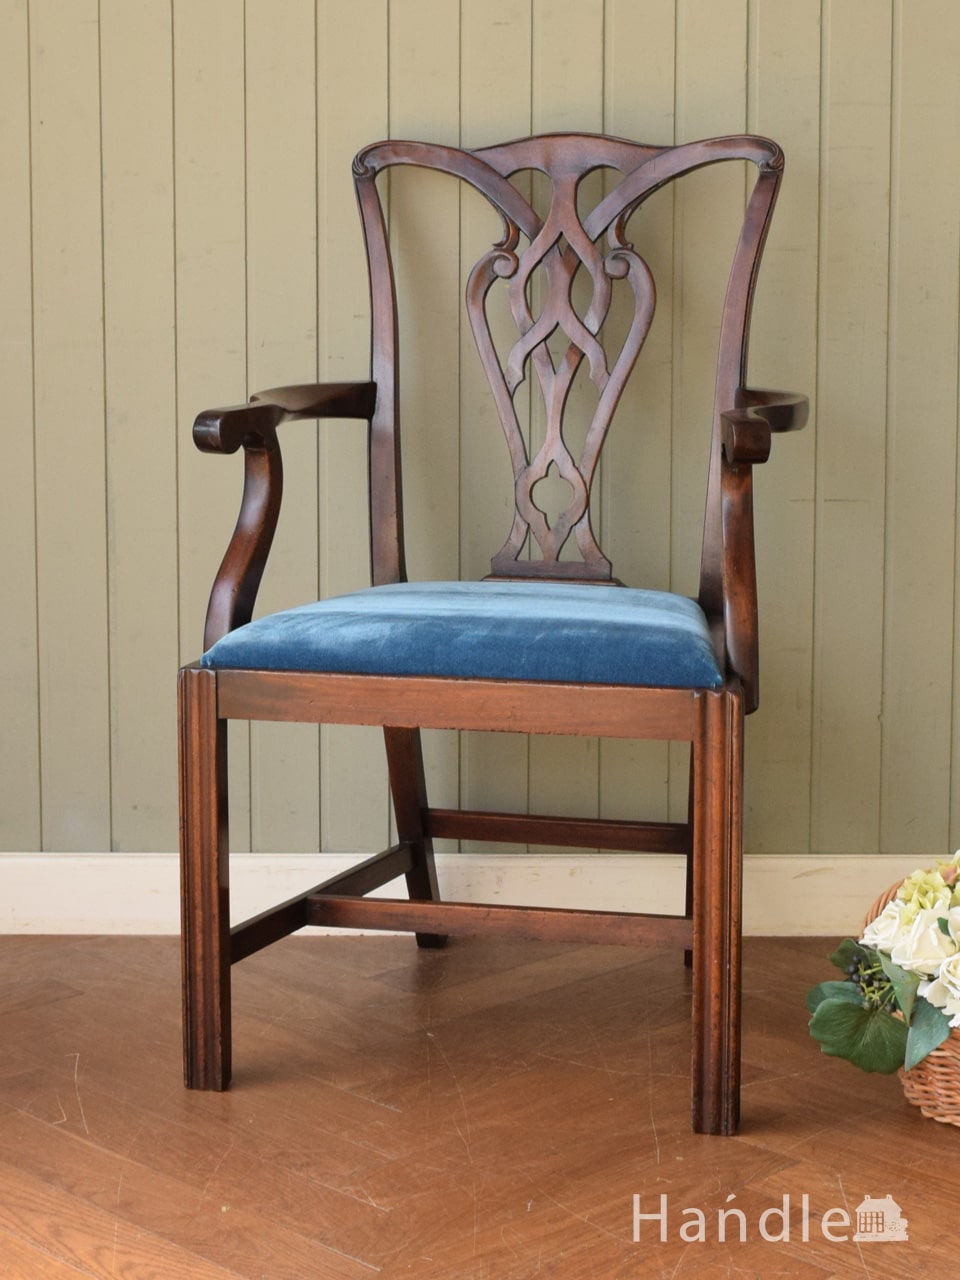 イギリスから届いたアンティークの椅子、アーム付きのチッペンデールチェア (k-1770-c)